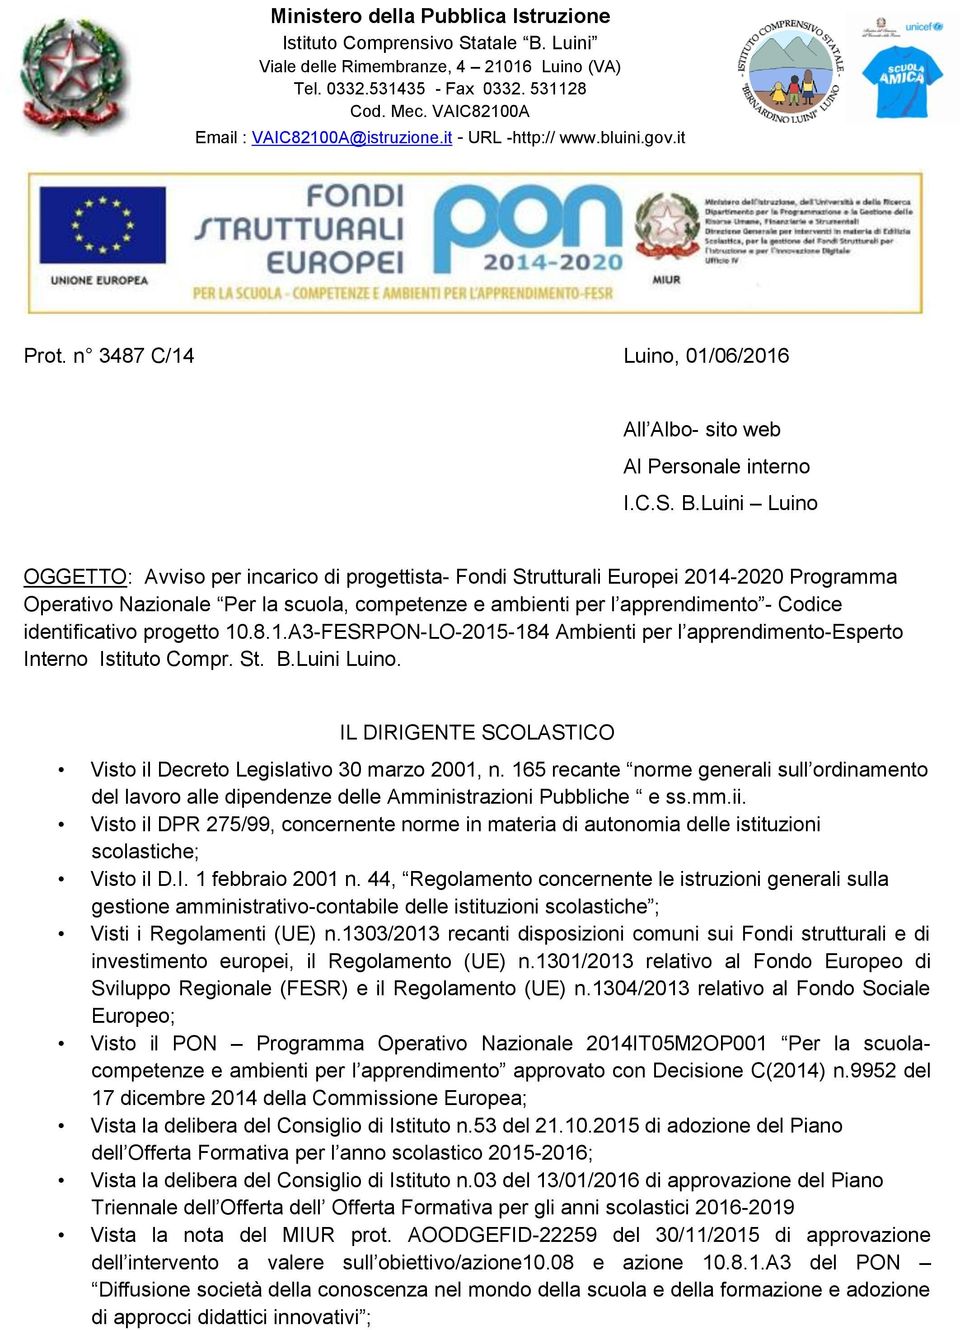 identificativo progetto 10.8.1.A3-FESRPON-LO-2015-184 Ambienti per l apprendimento-esperto Interno Istituto Compr. St. B.Luini Luino.